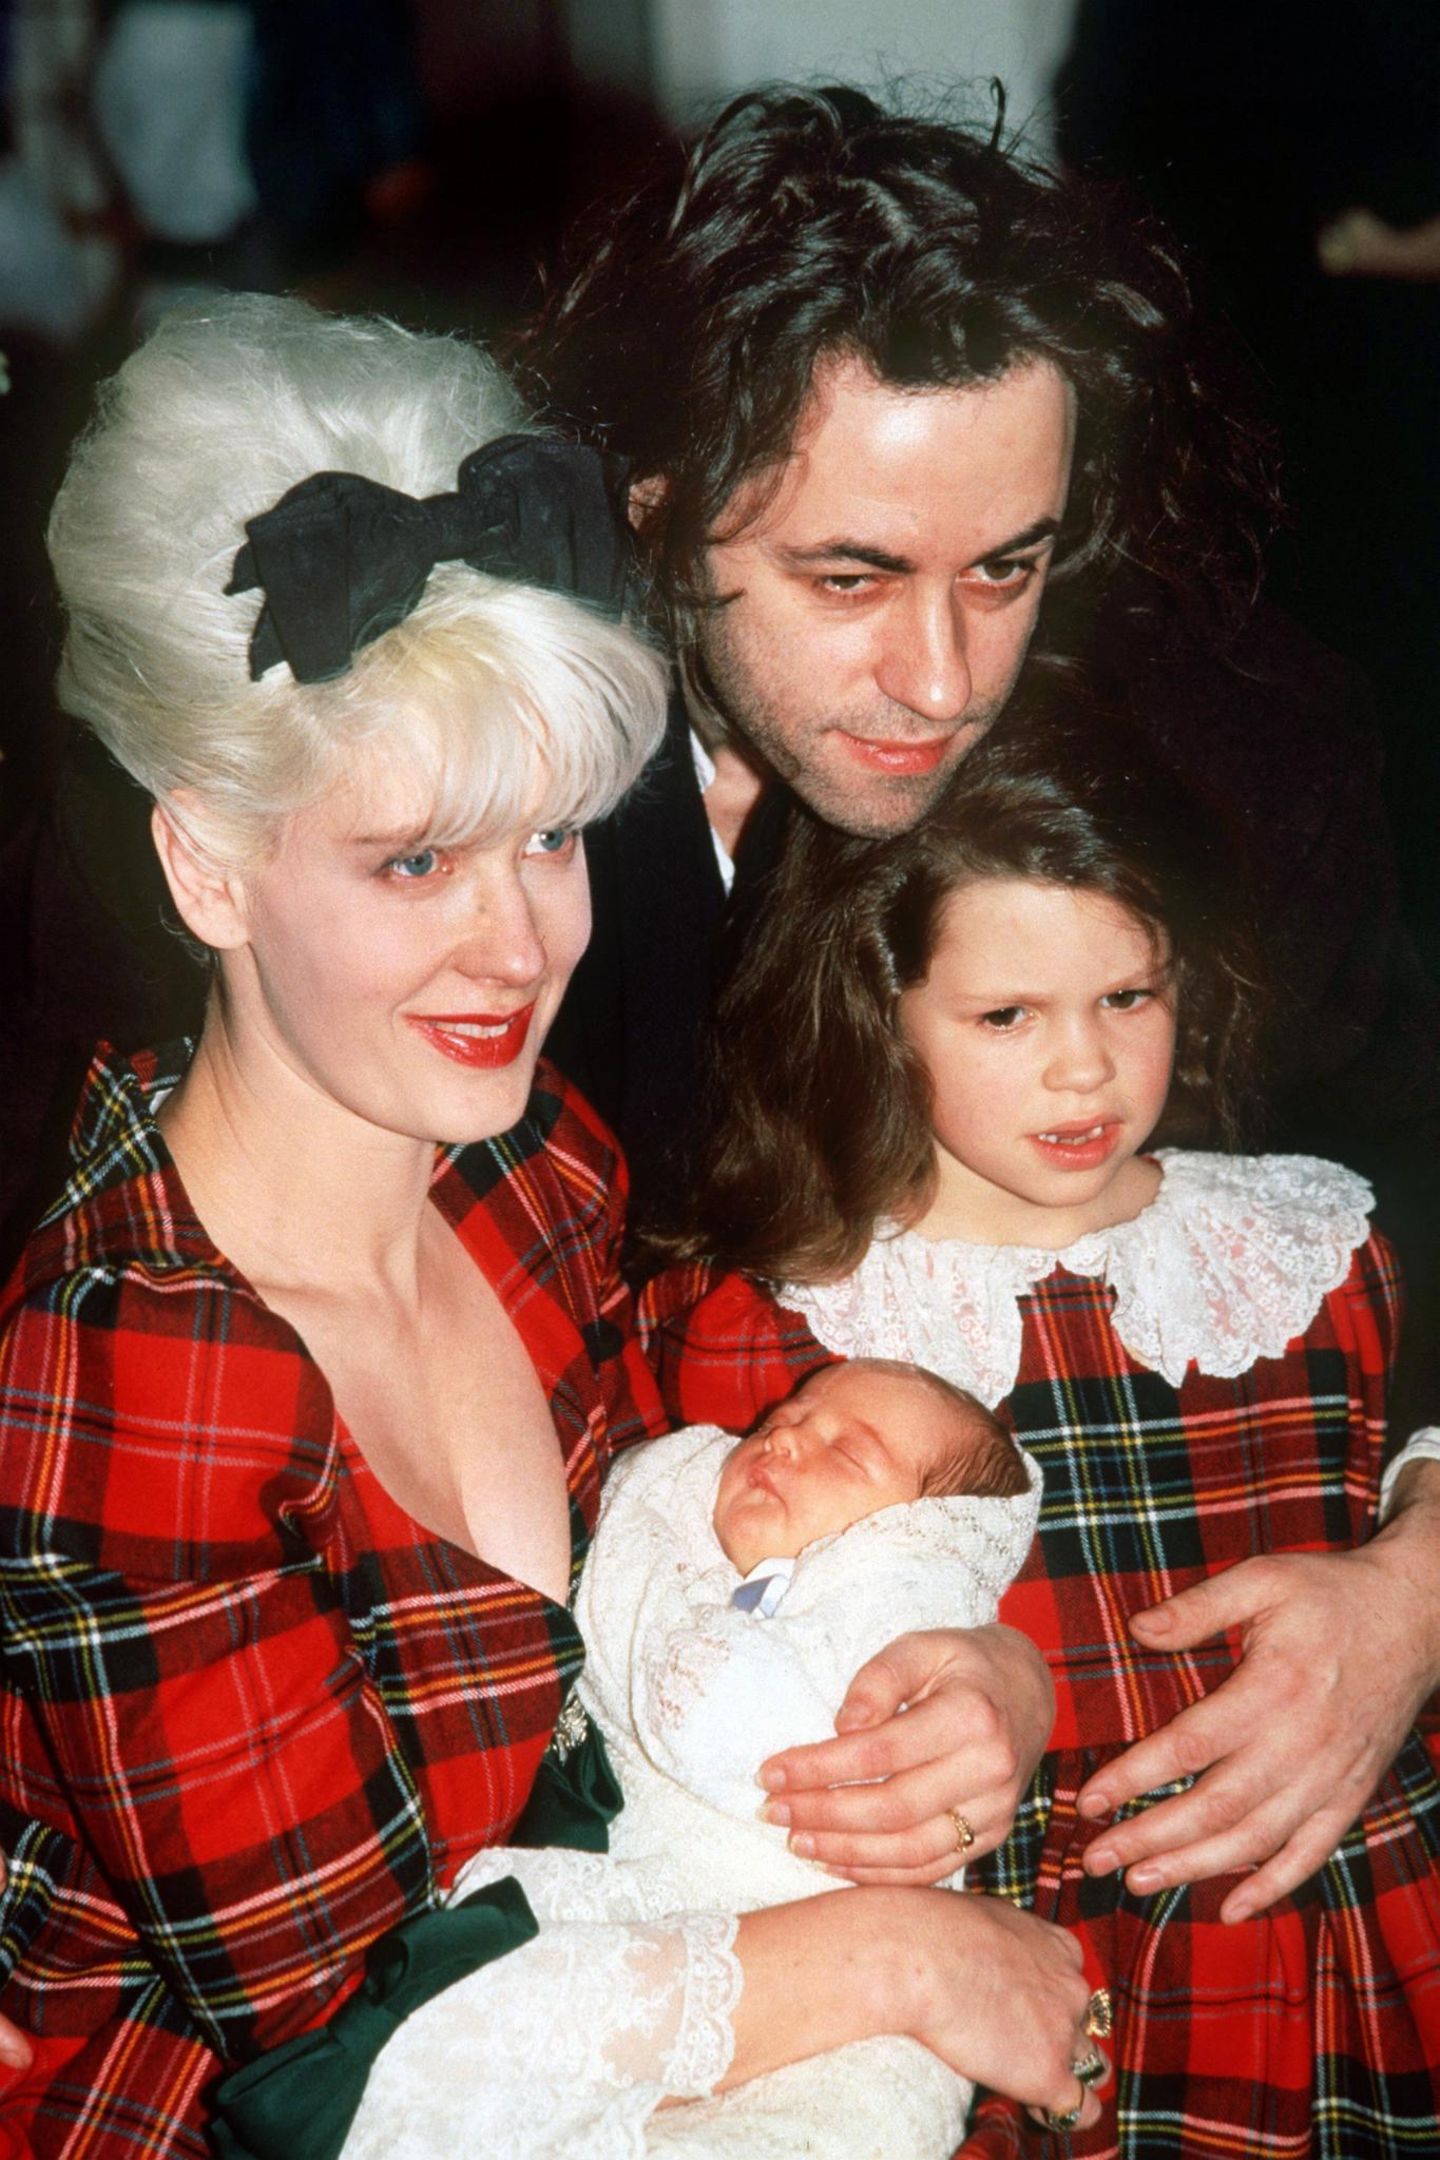 Peaches wird am 16. März 1989 als zweites Kind des irischen Musikers Bob Geldof und der Fernsehmoderatorin Paula Yates geboren.